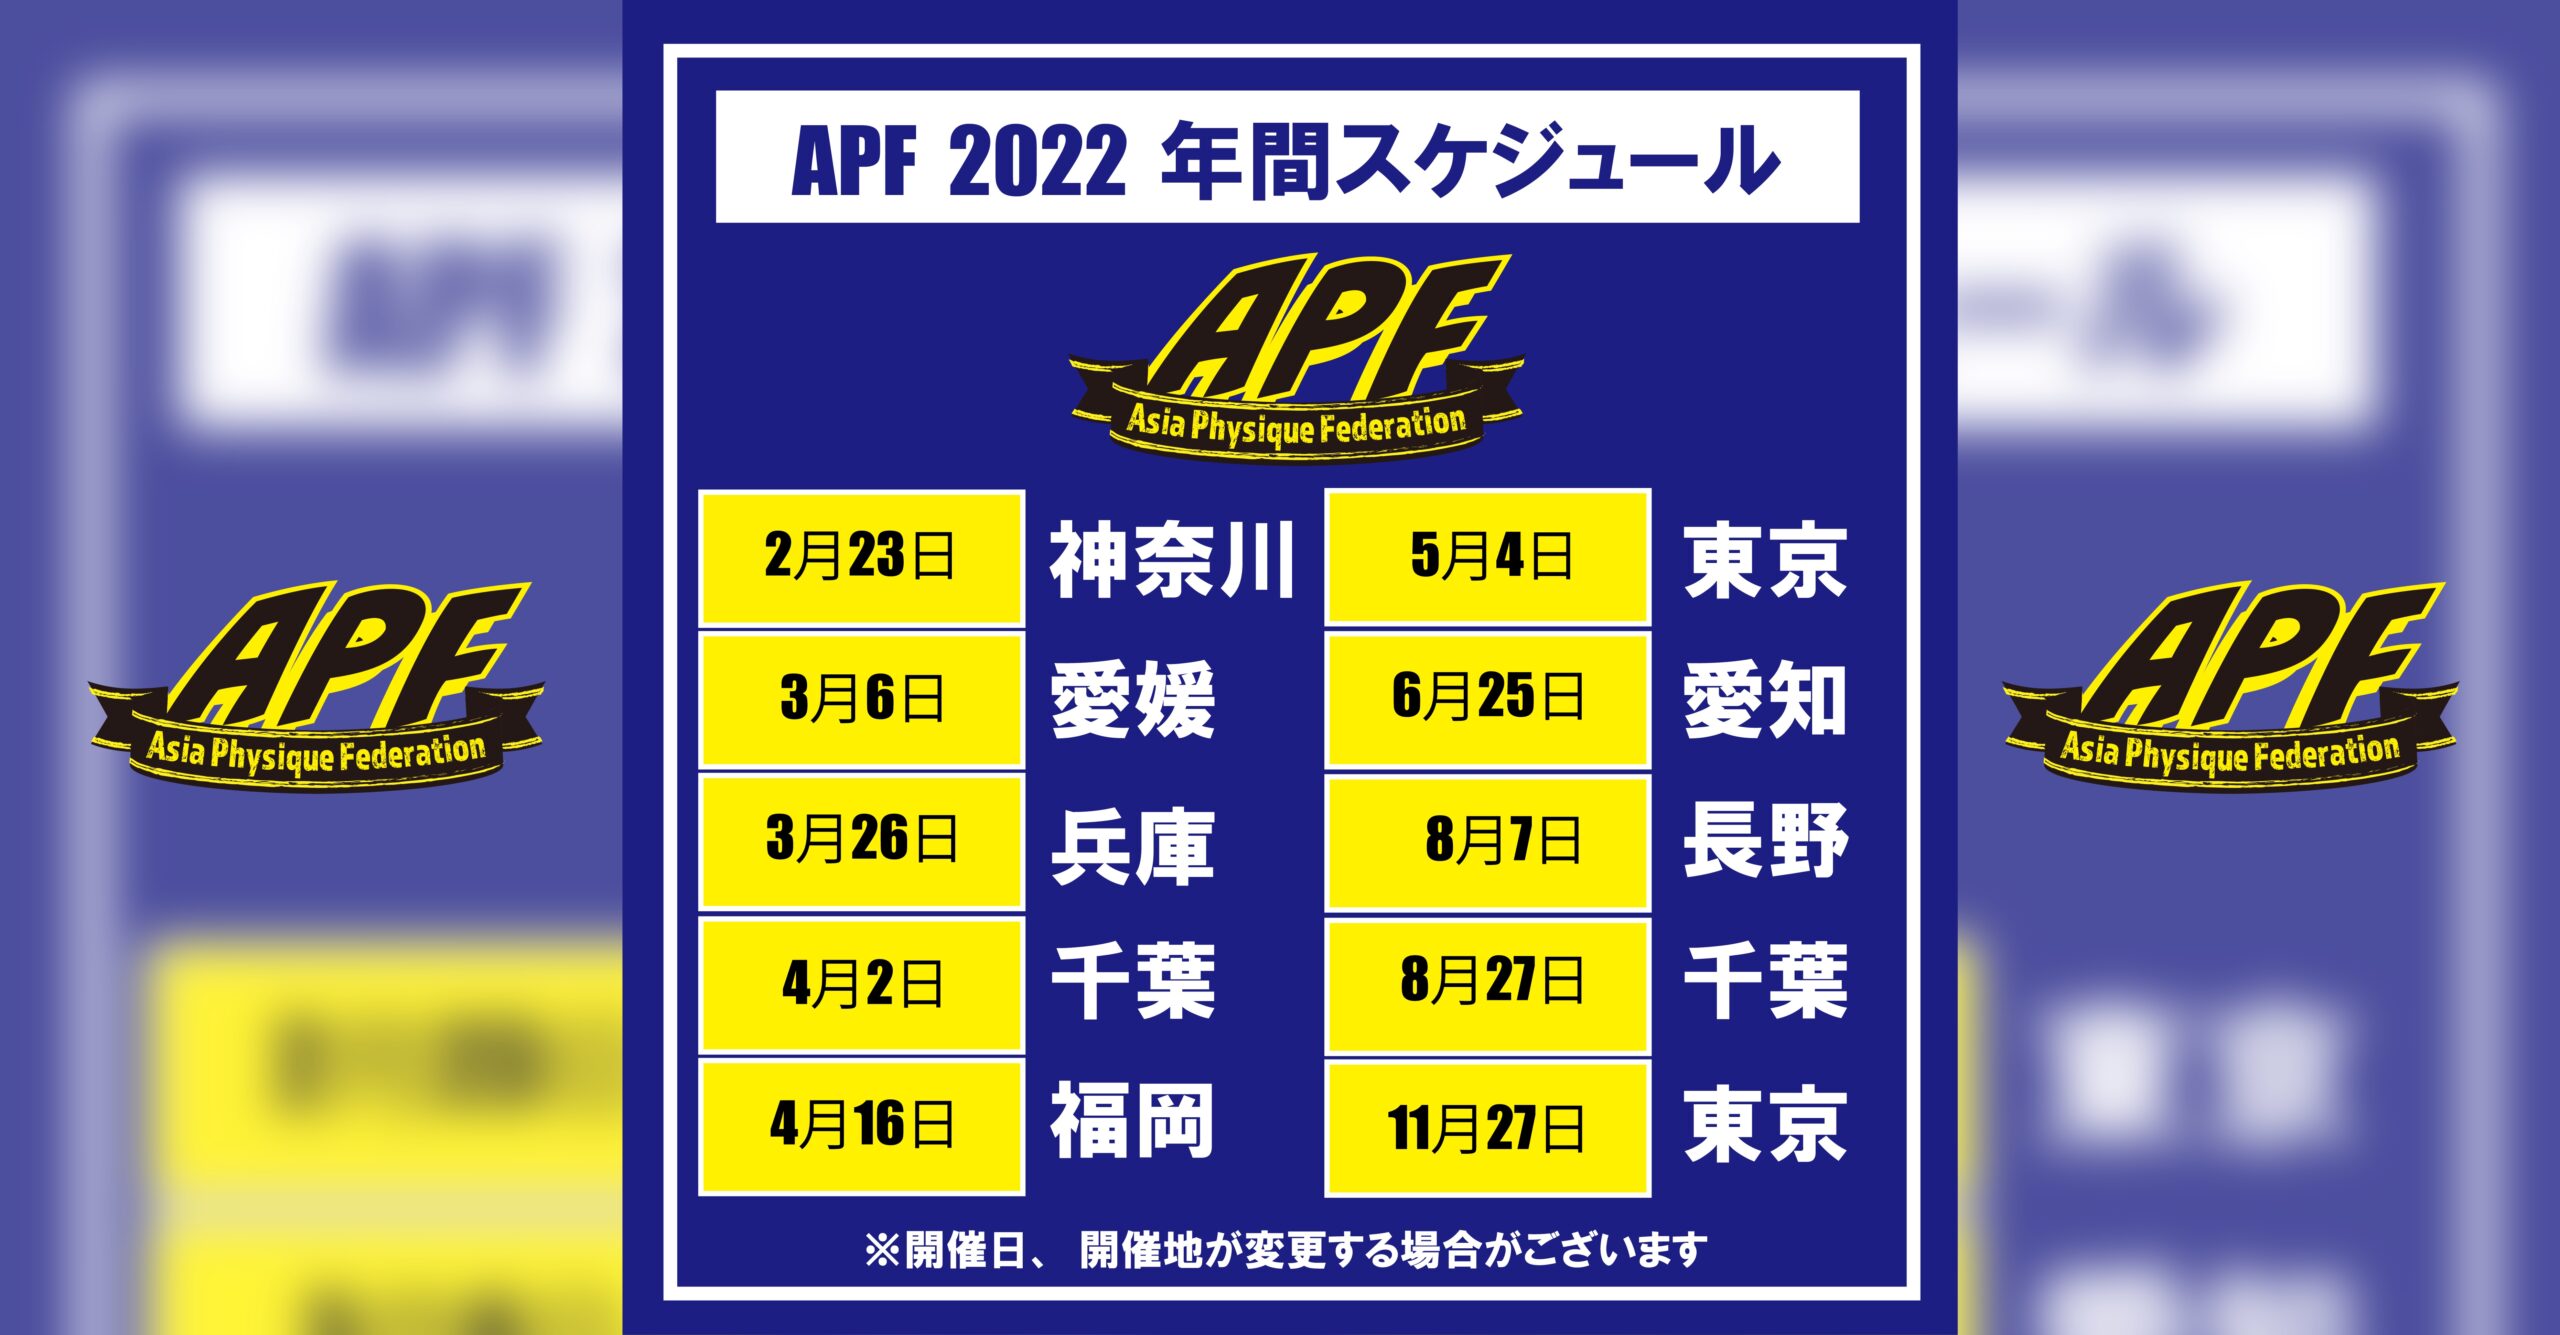 APF 2022年スケジュール公開!!